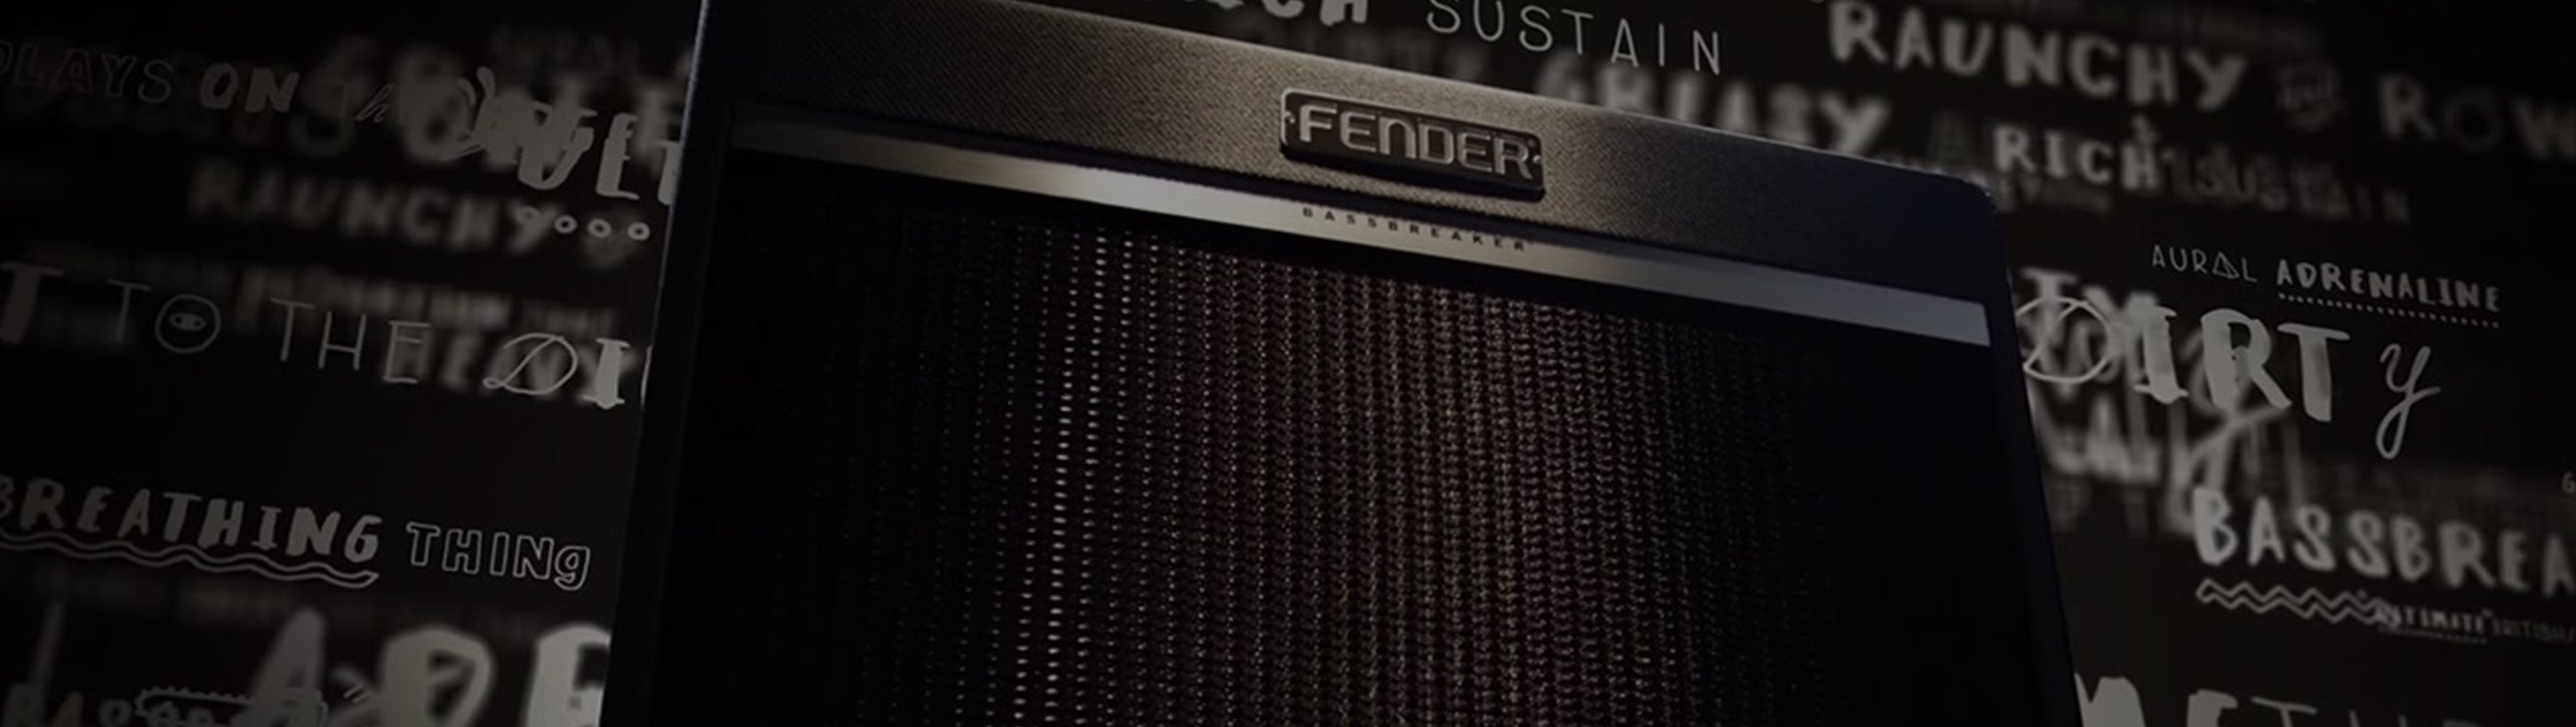 Fender Bassbreaker Amplifiers